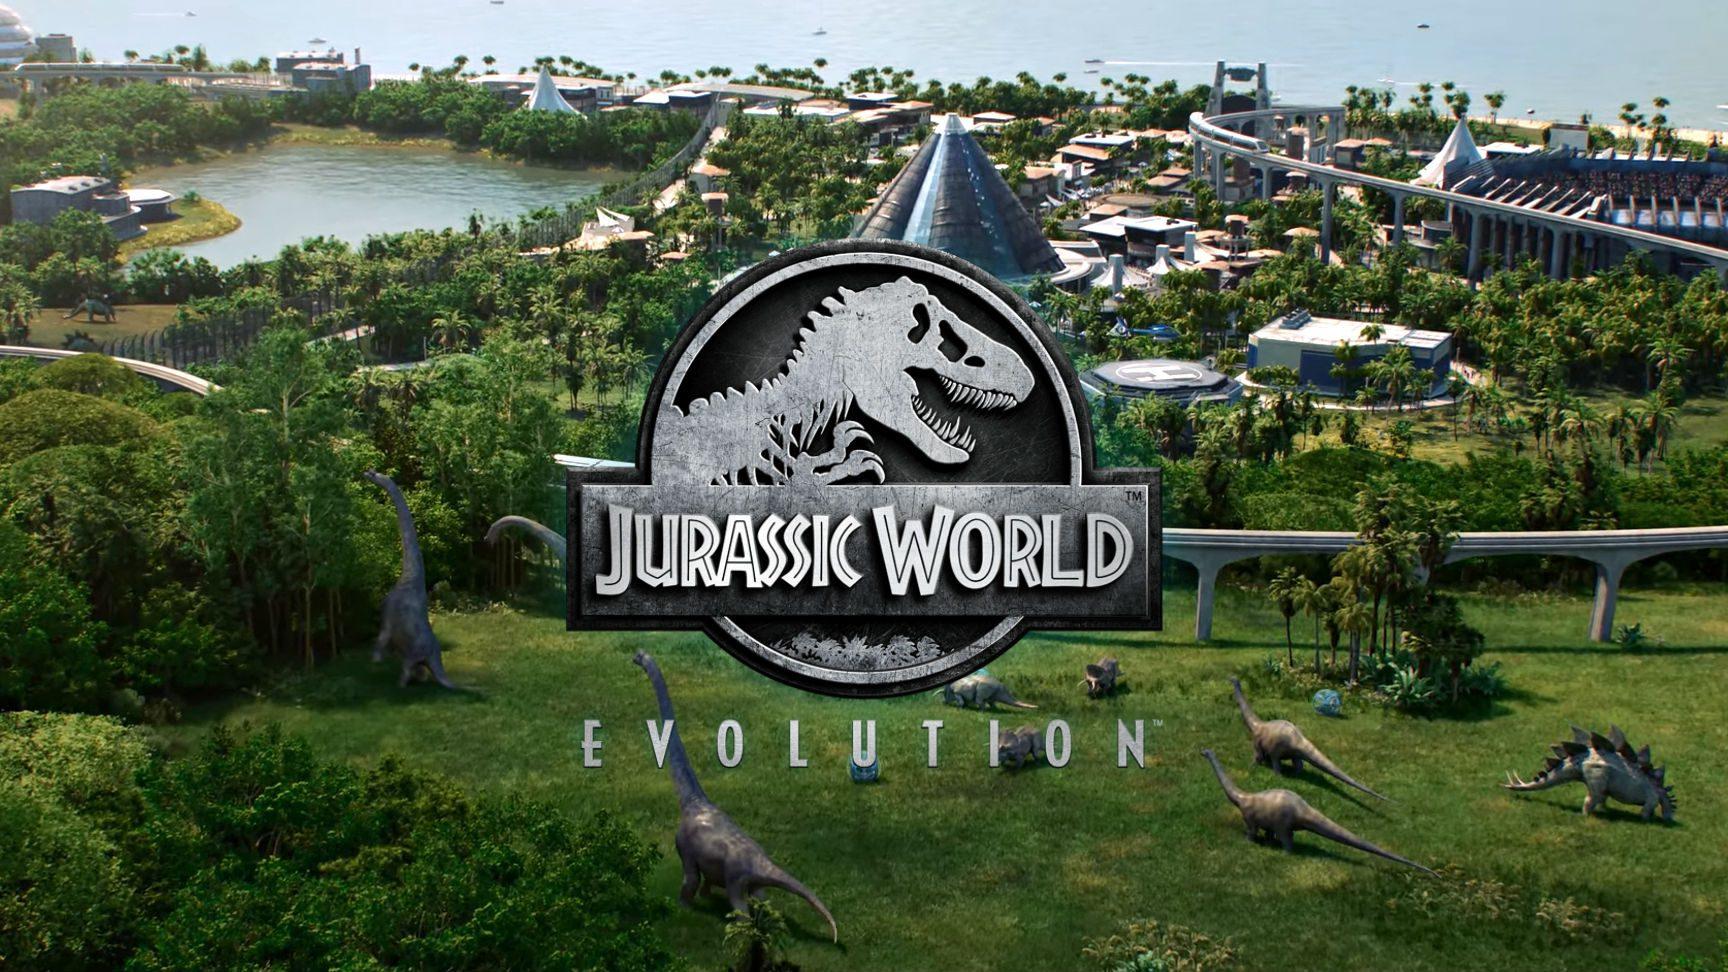 Jurassic World Live Tour - Hershey